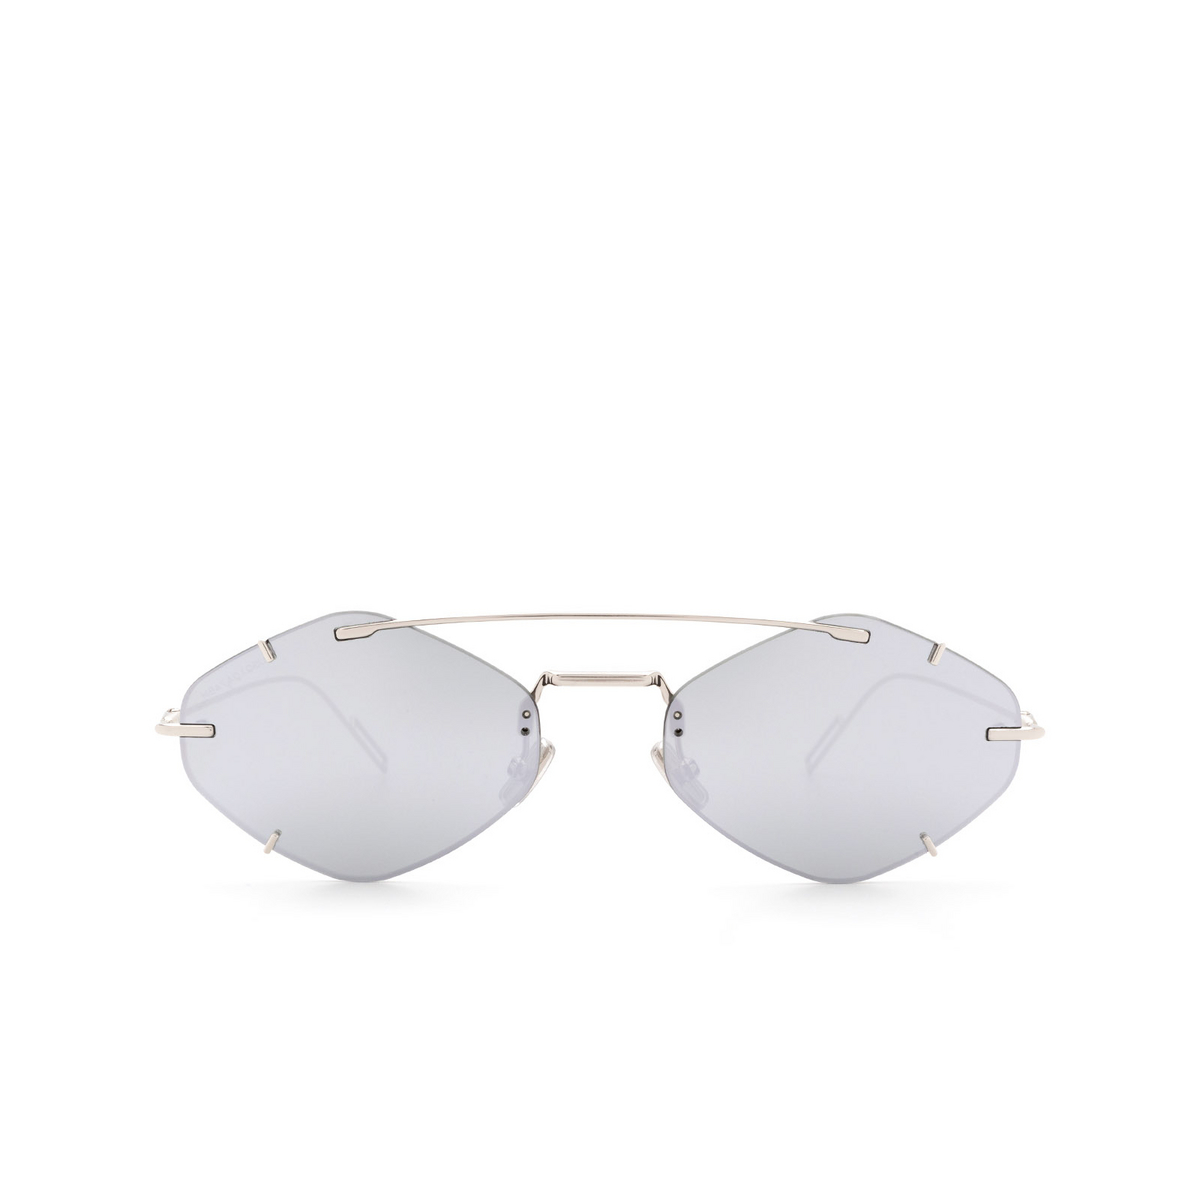 Dior DIORINCLUSION Sunglasses 010/OT Silver - front view